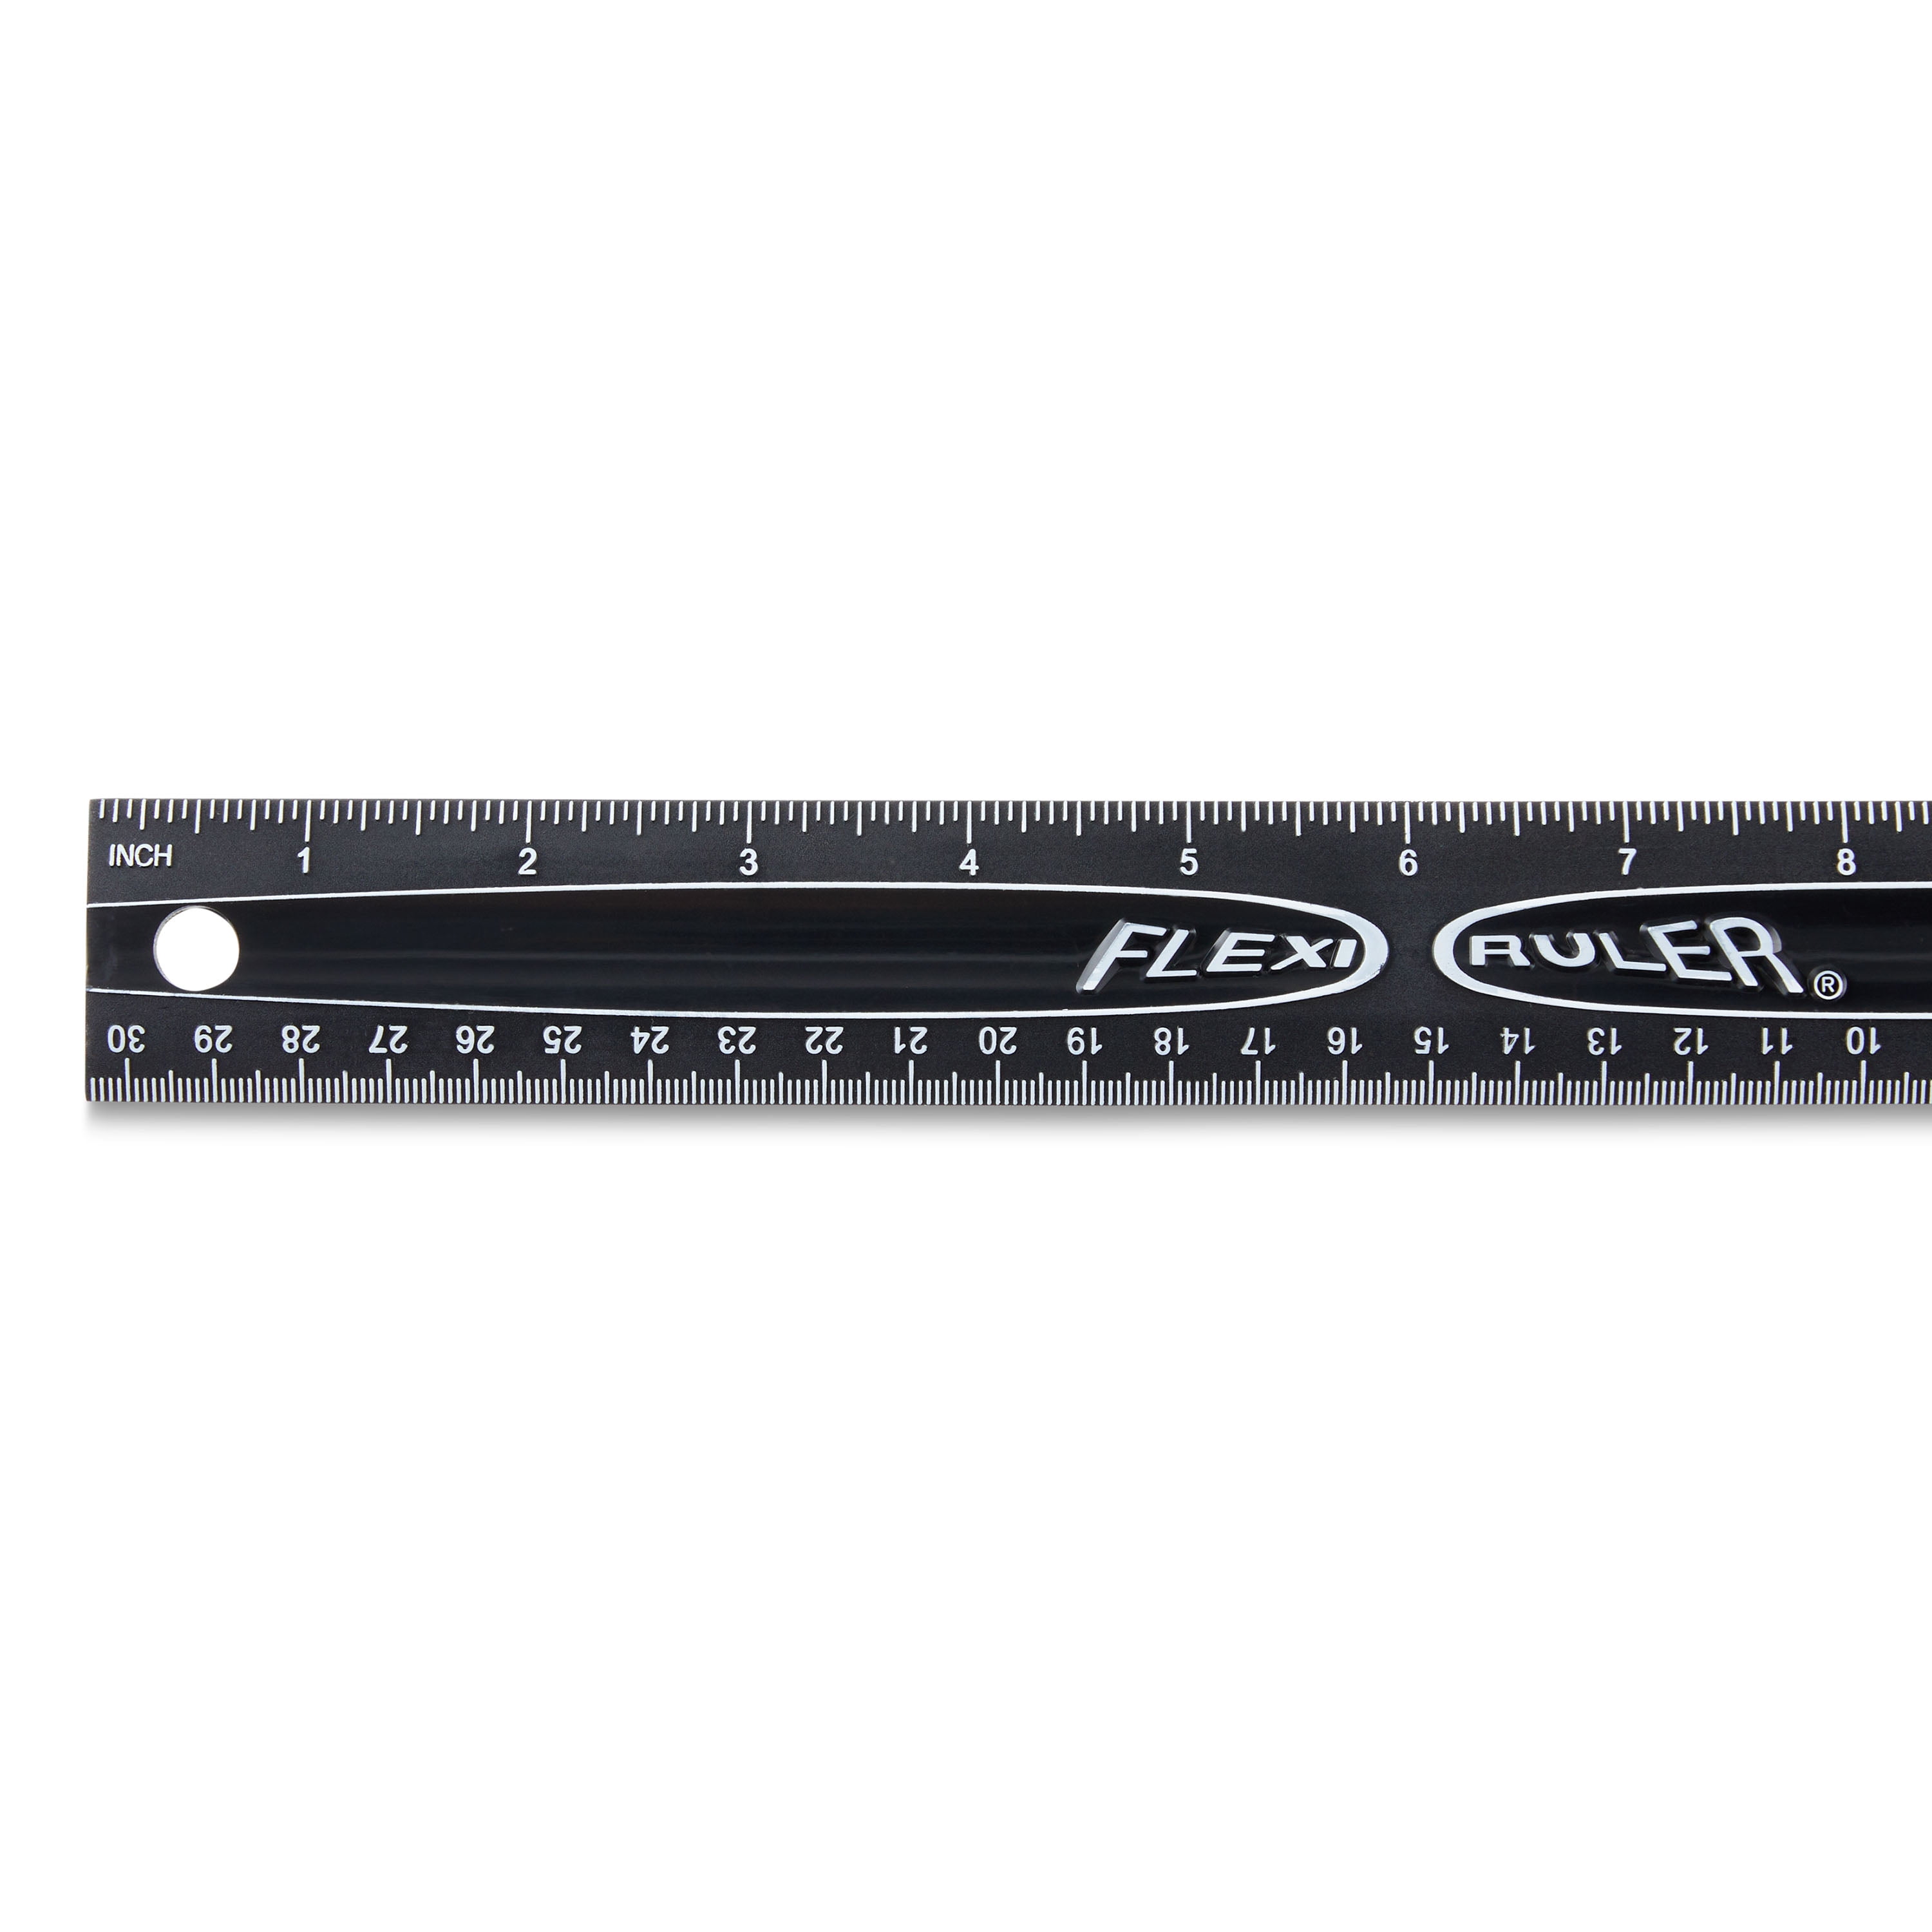 Mr. Pen- Machinist Ruler, 4 Pack (6, 8, 12, 14 inch), Metric Ruler, Millimeter